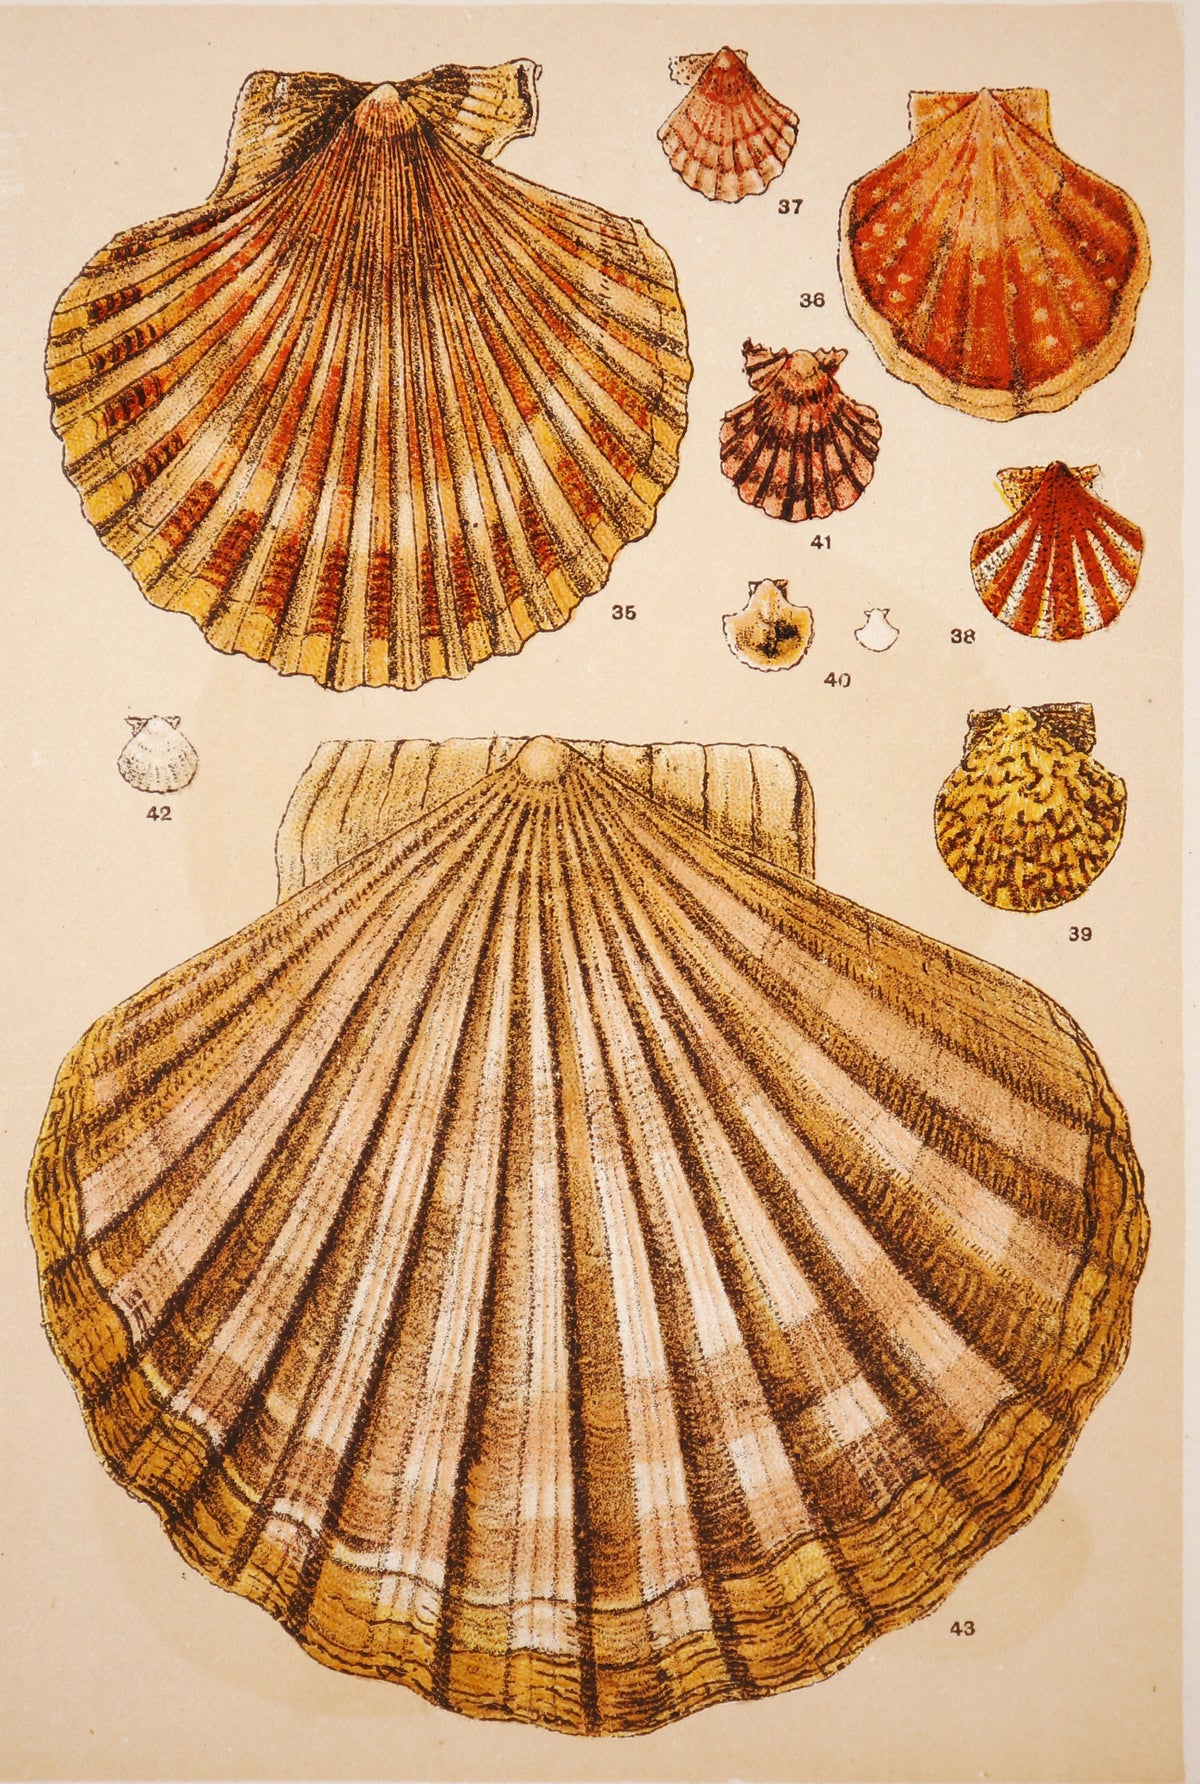 Shells, Antique Chromolithograph - Authentic Vintage Antique Print